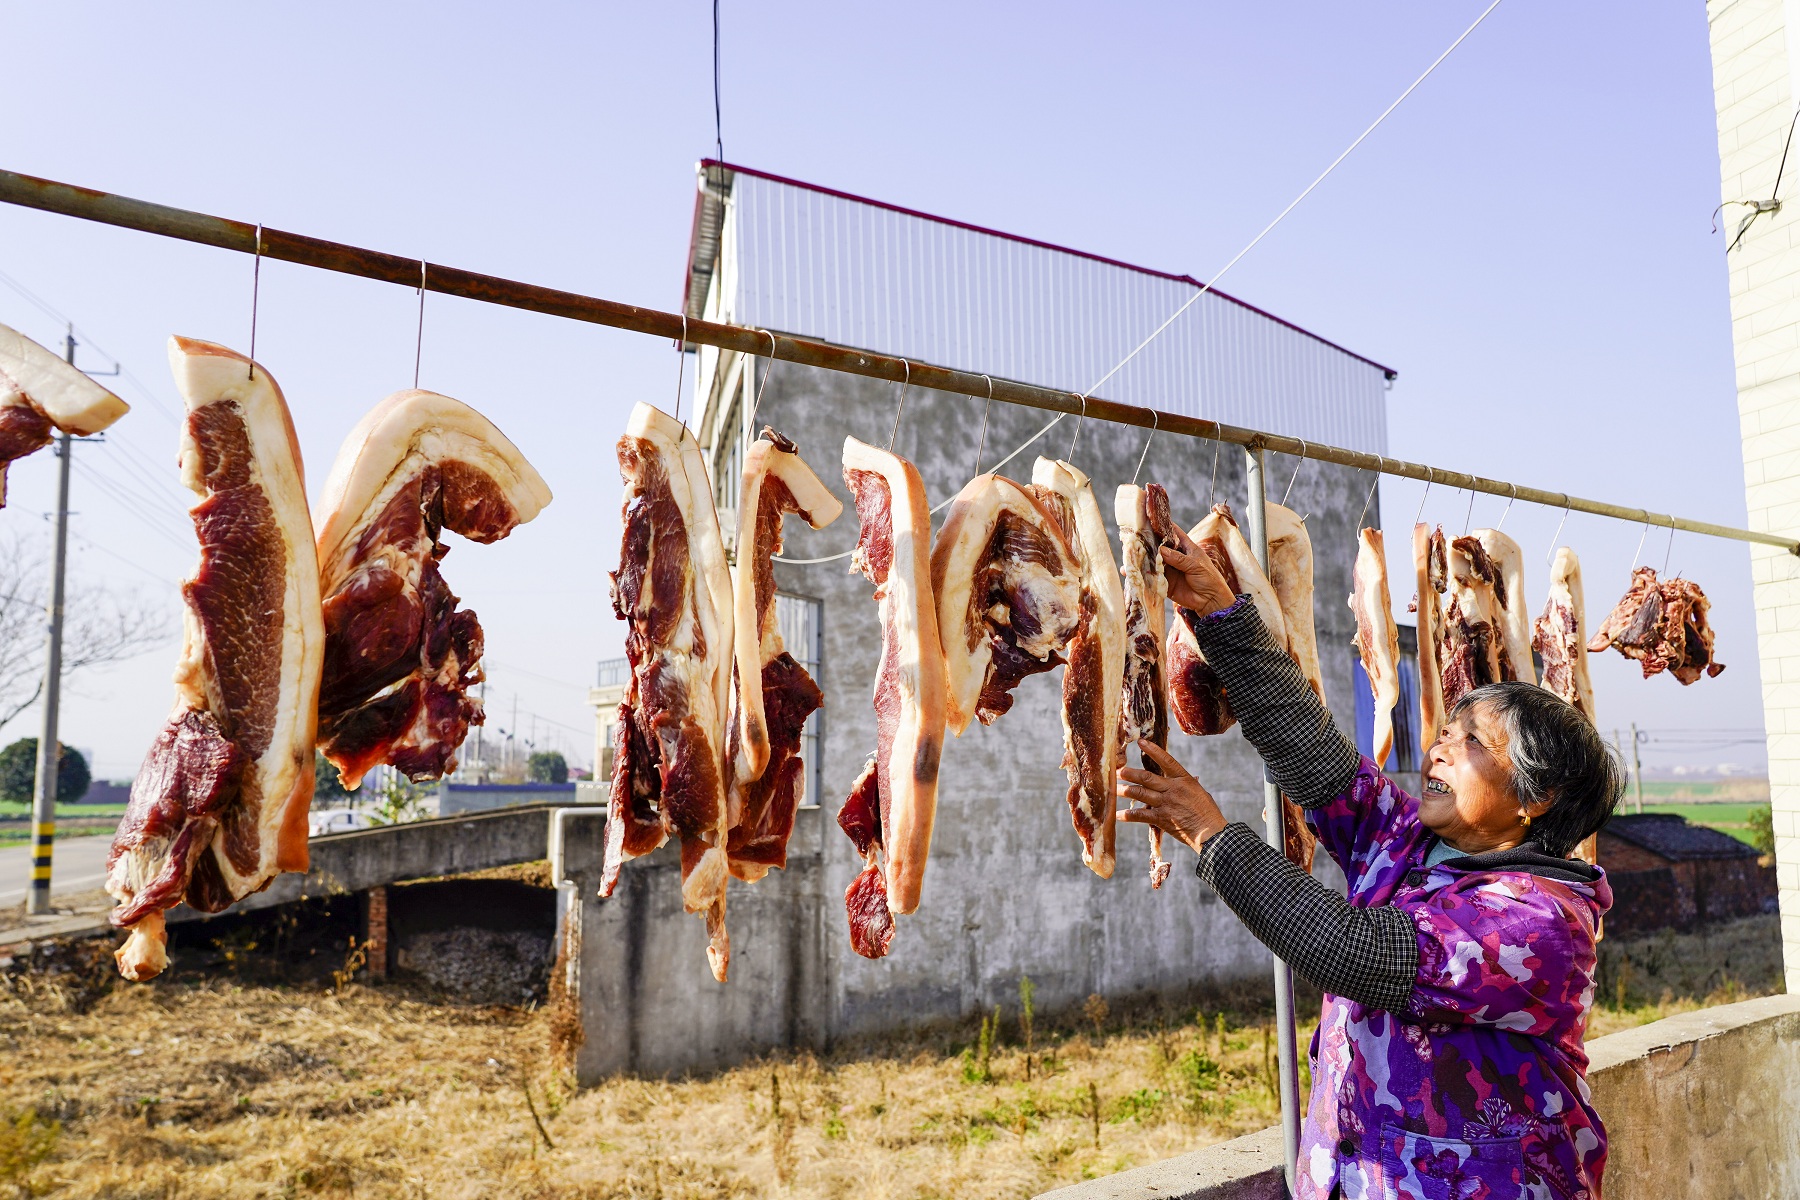 村民将腌制的猪肉晾晒在竹架上.jpg